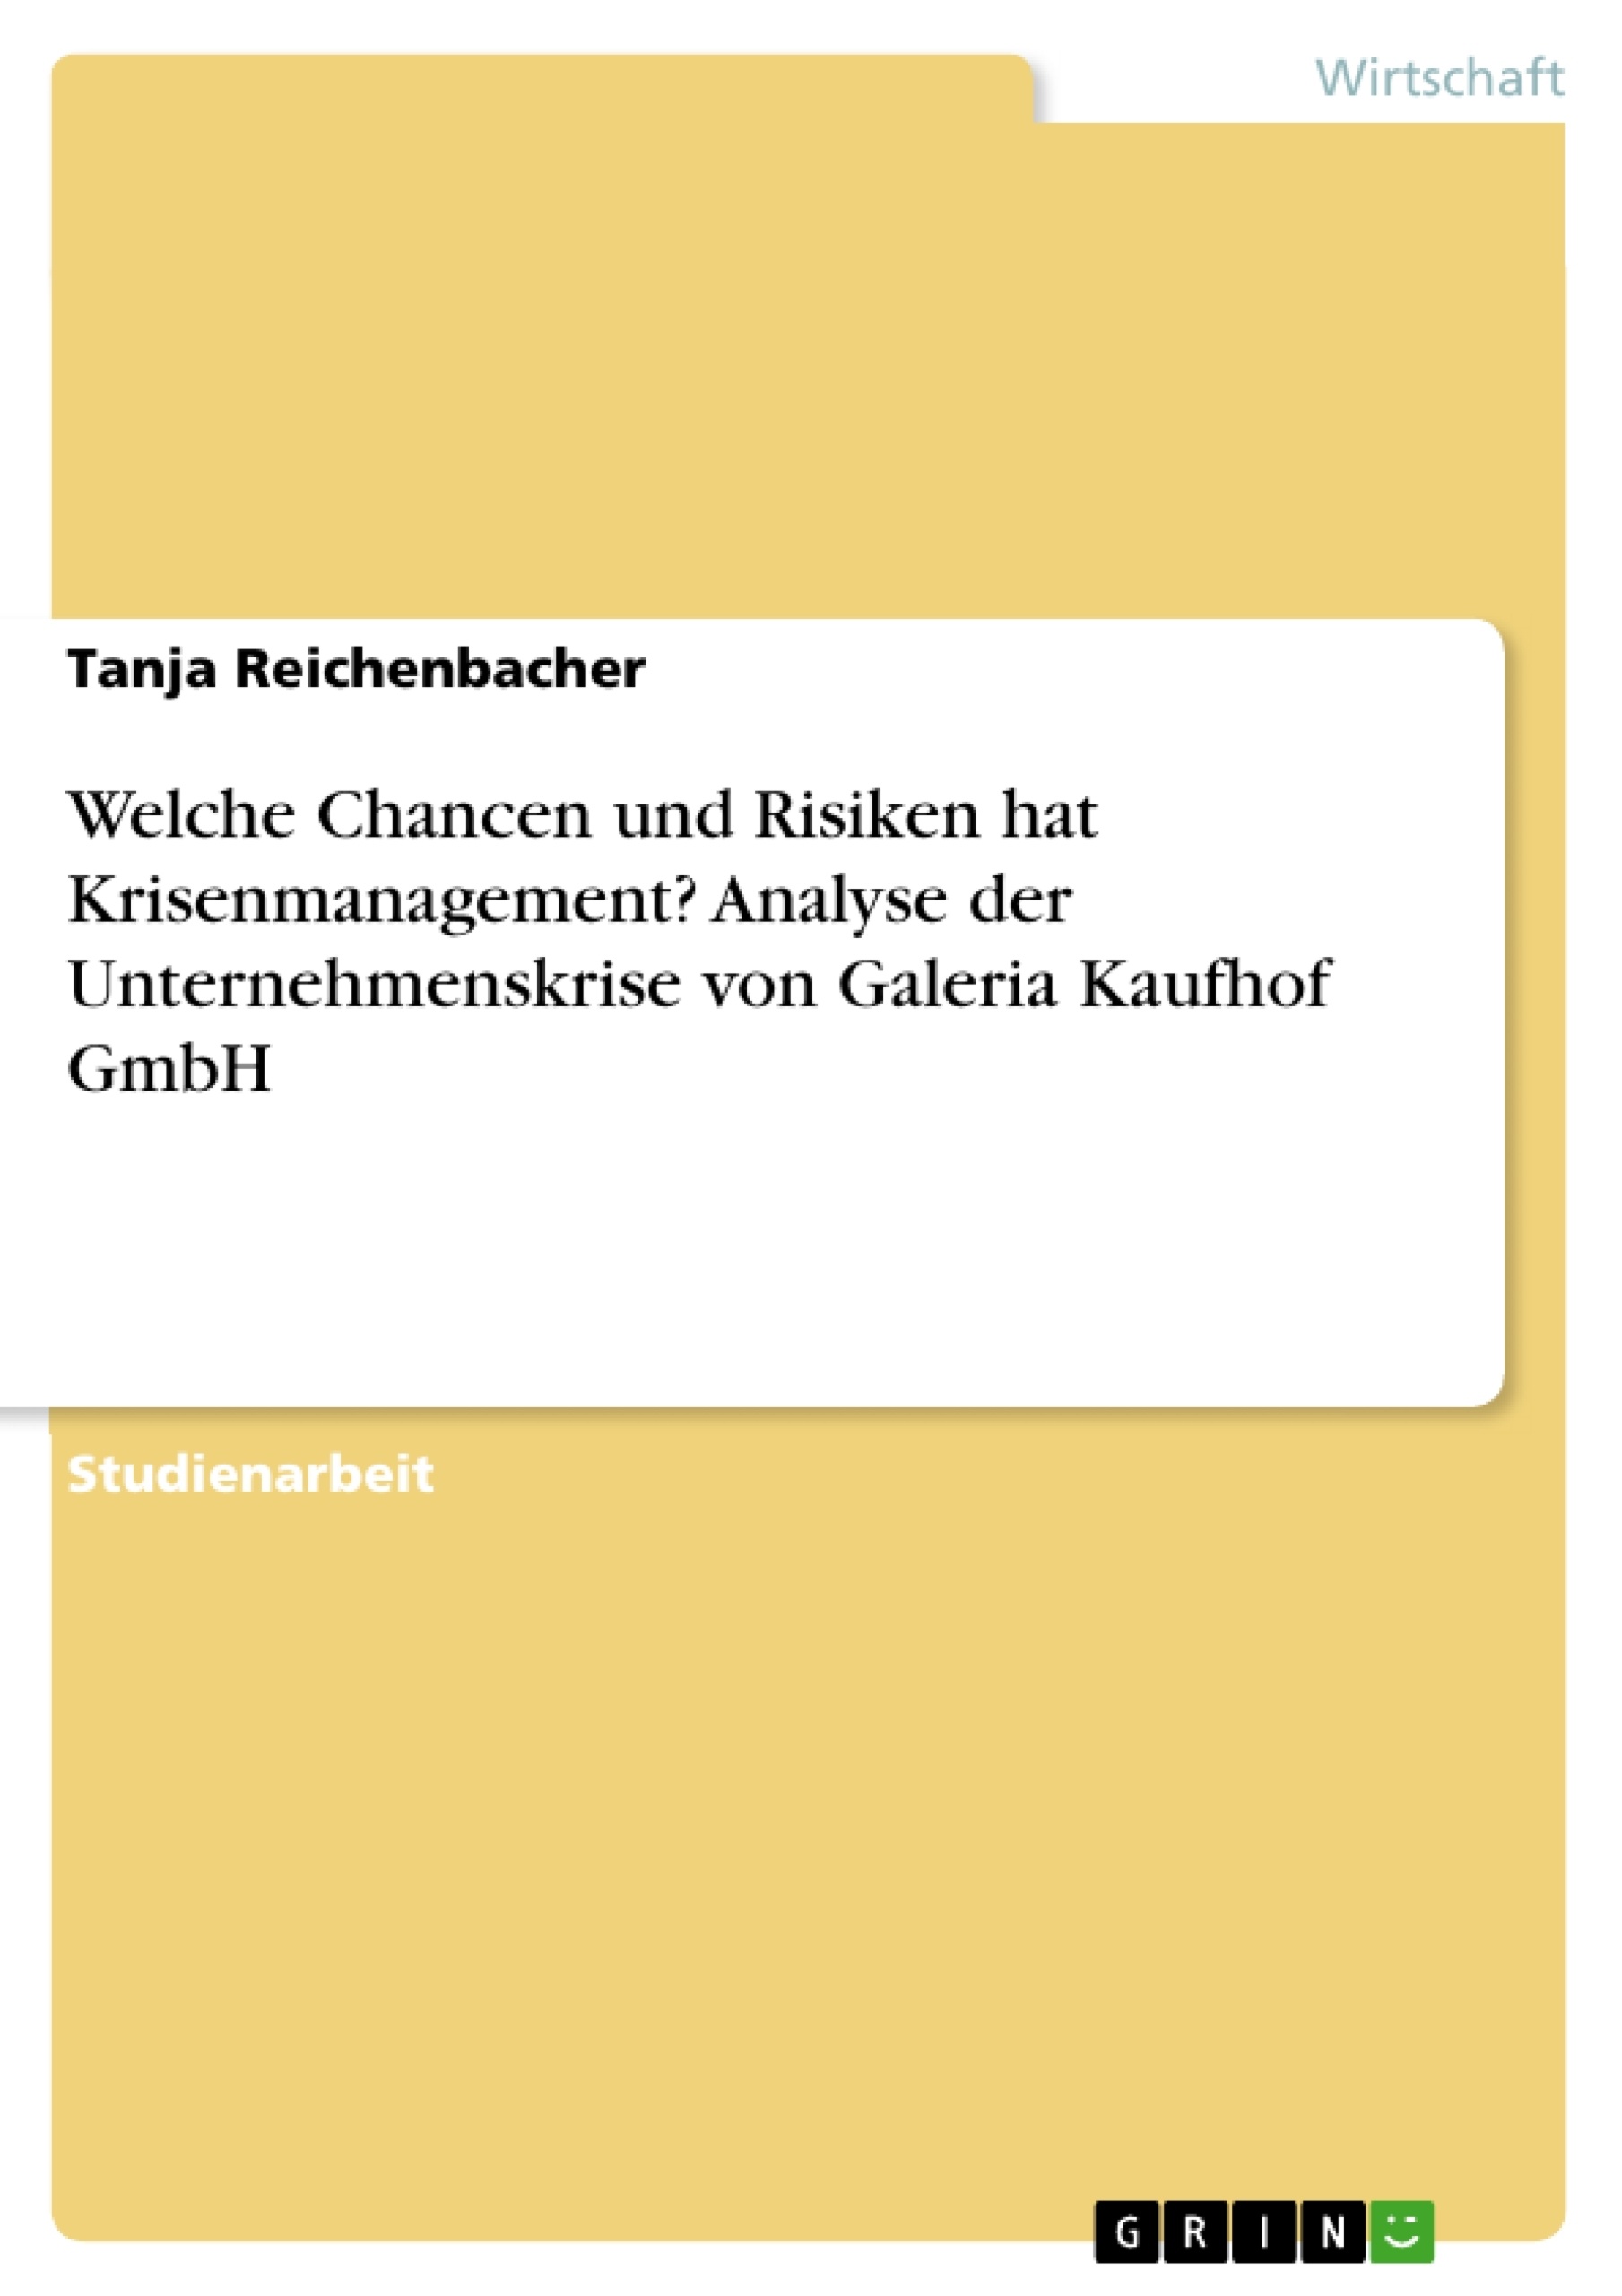 Titre: Welche Chancen und Risiken hat Krisenmanagement? Analyse der Unternehmenskrise von Galeria Kaufhof GmbH